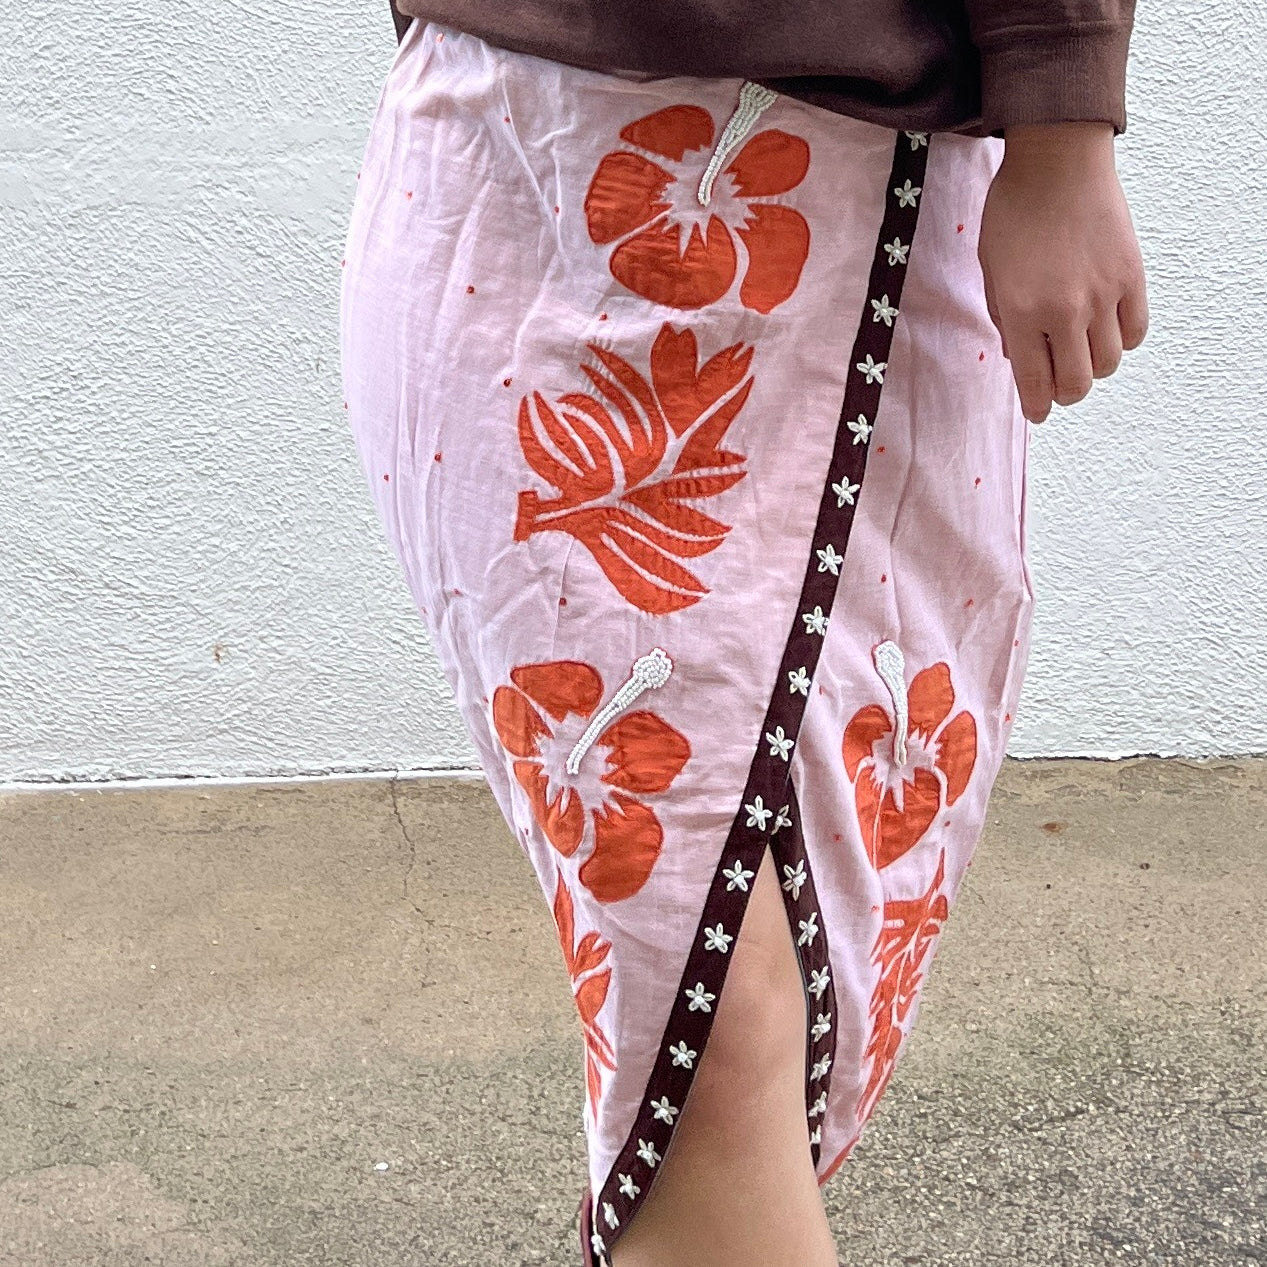 Hibiscus Skirt